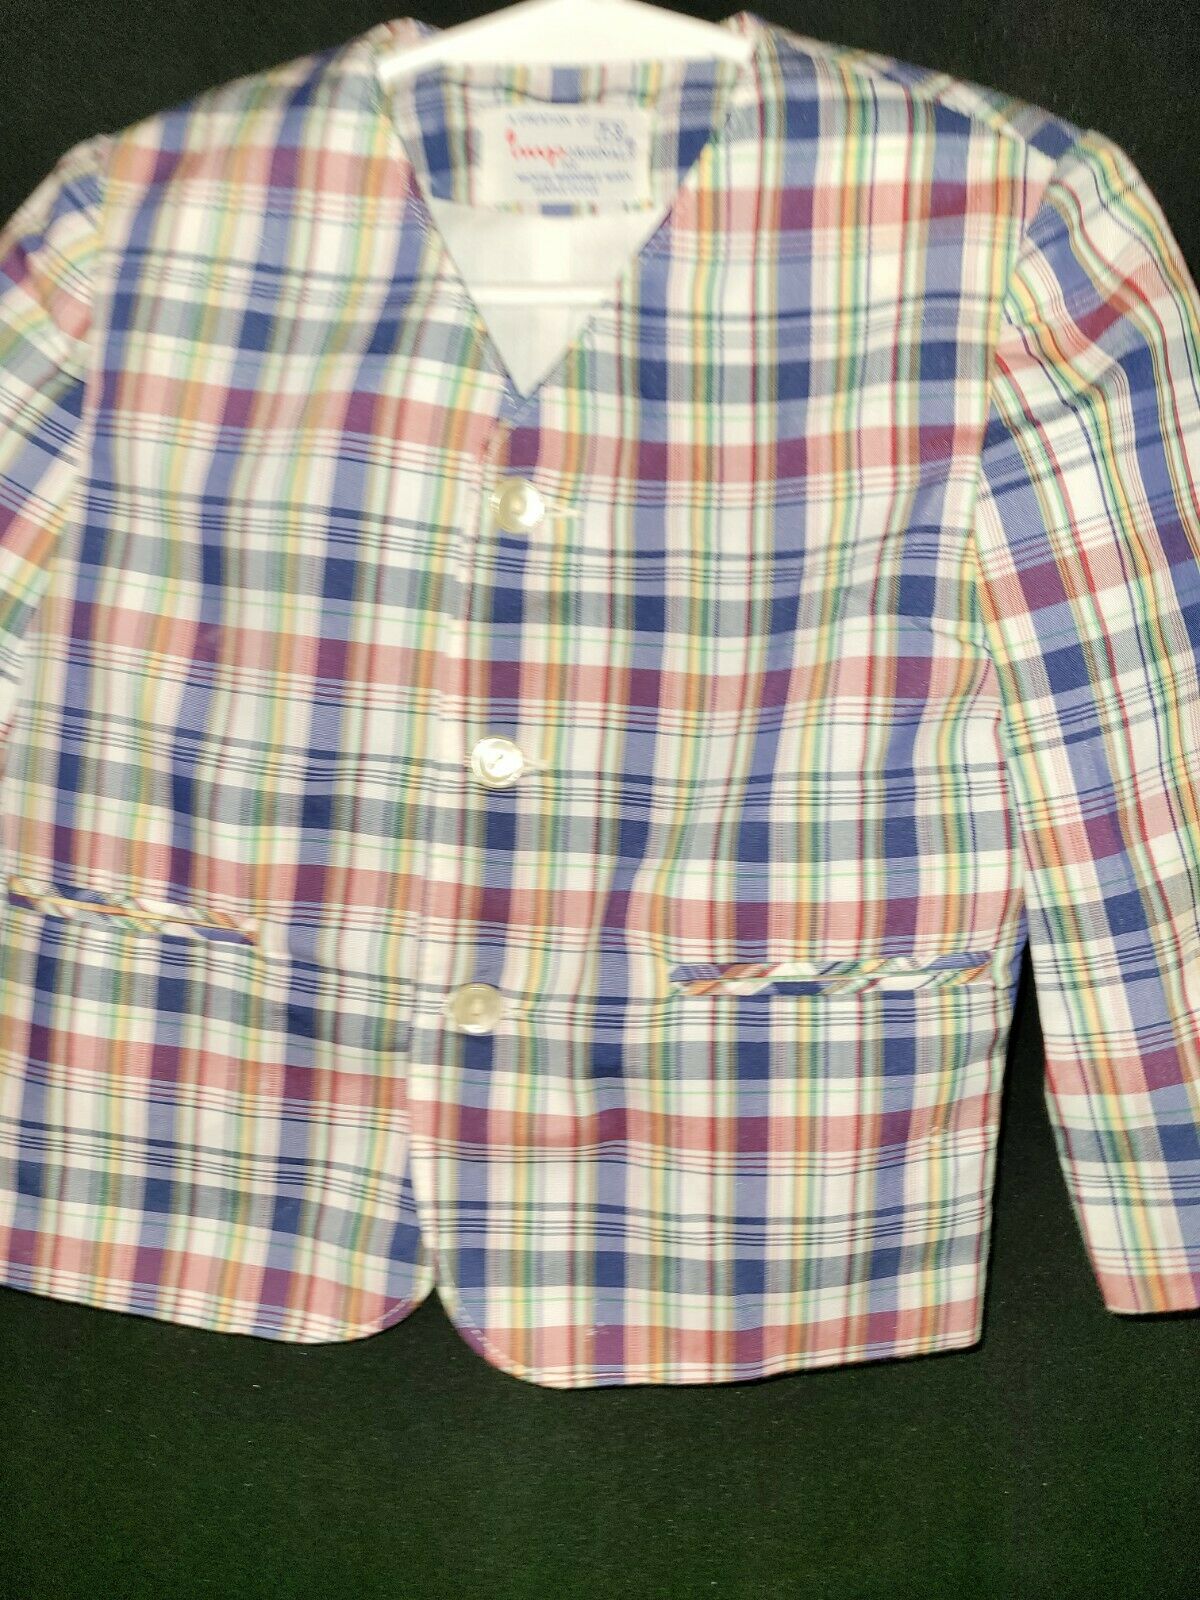 Vintage Imps Originals Boys Blazer Jacket Size 3t Multicolored Plaid